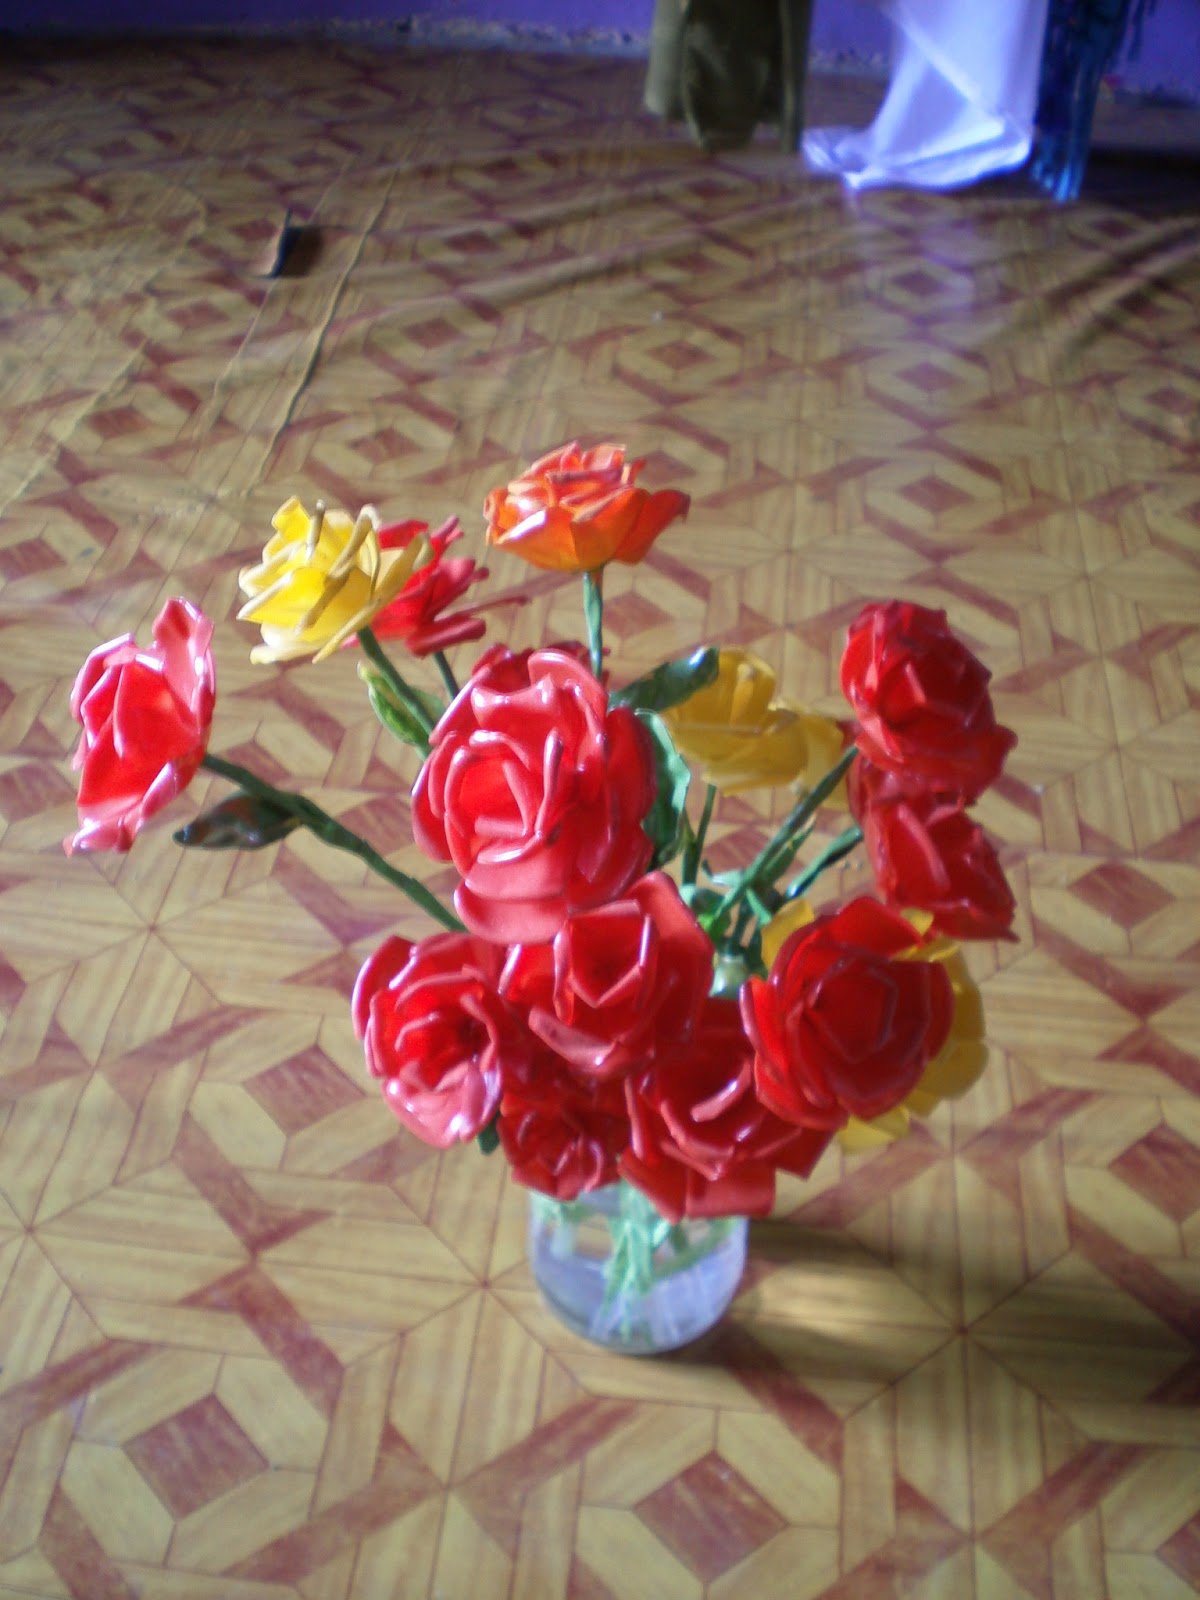  bunga  mawar dari botol plastik  dauun